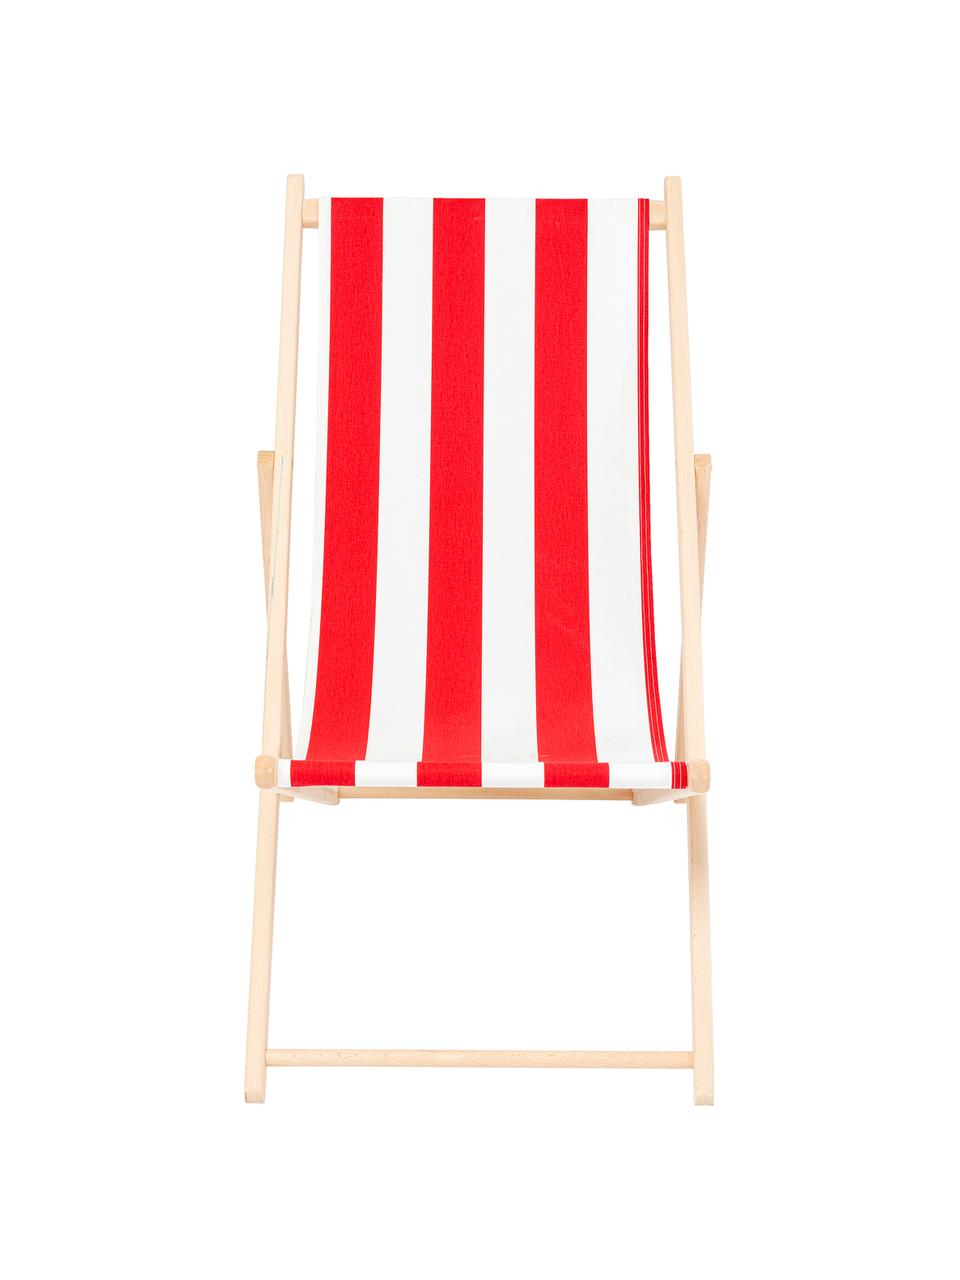 Klappbarer Liegestuhl Hot Summer, Gestell: Buchenholz, Rot, Weiß, Buchenholz, B 96 x T 56 cm